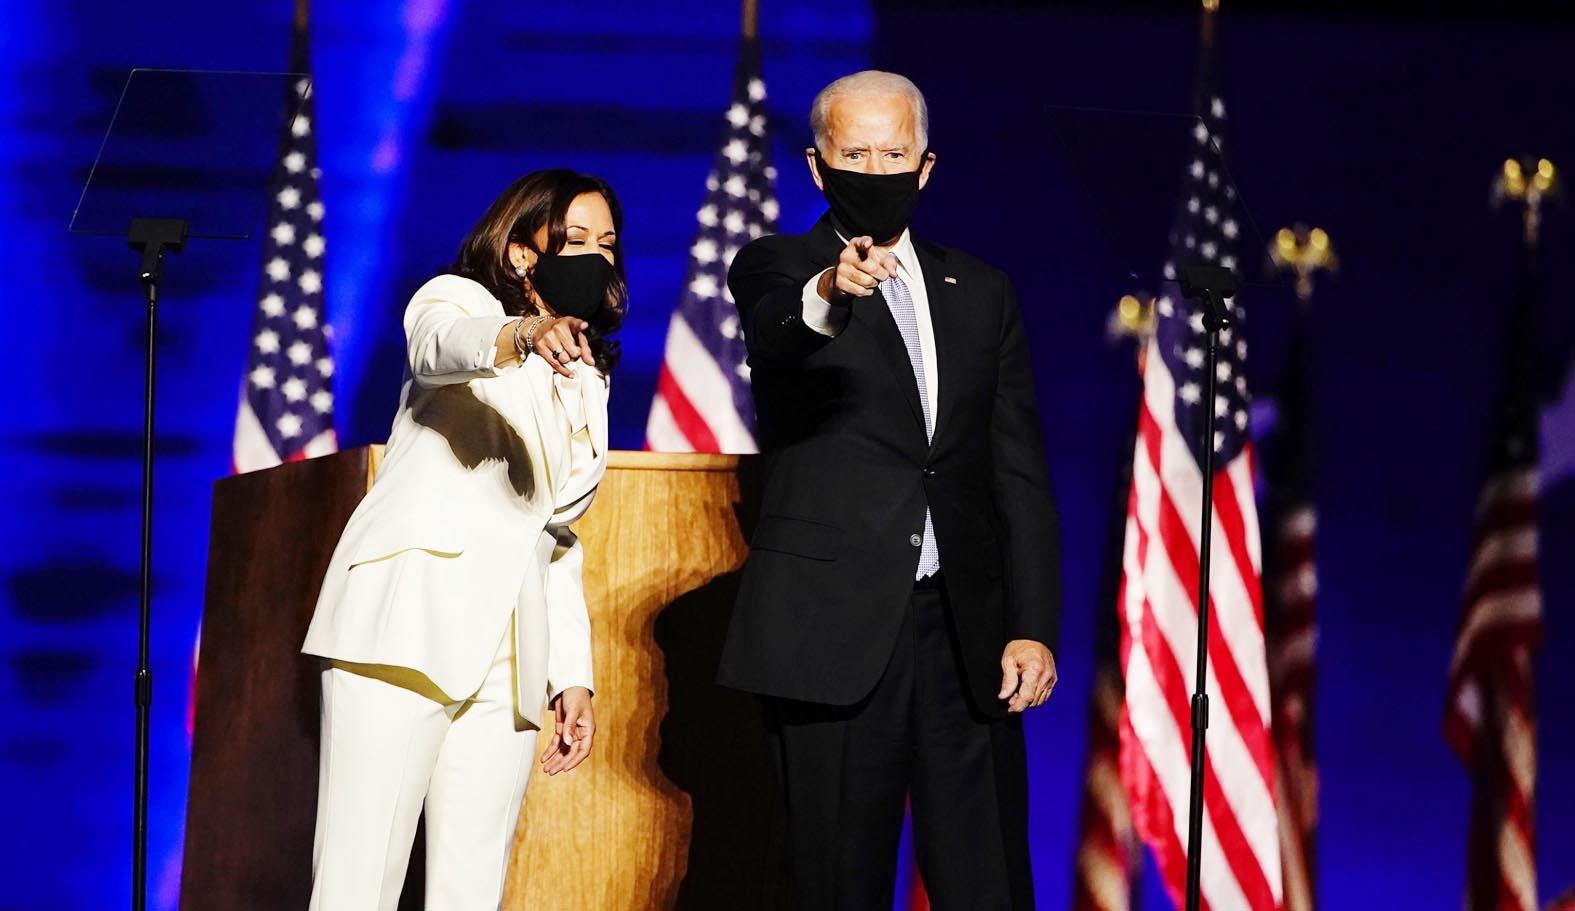  Tổng thống đắc cử Joe Biden, đã có bài phát biểu đầu tiên kể từ khi giành chiến thắng trong cuộc bầu cử.p/Ảnh: Getty